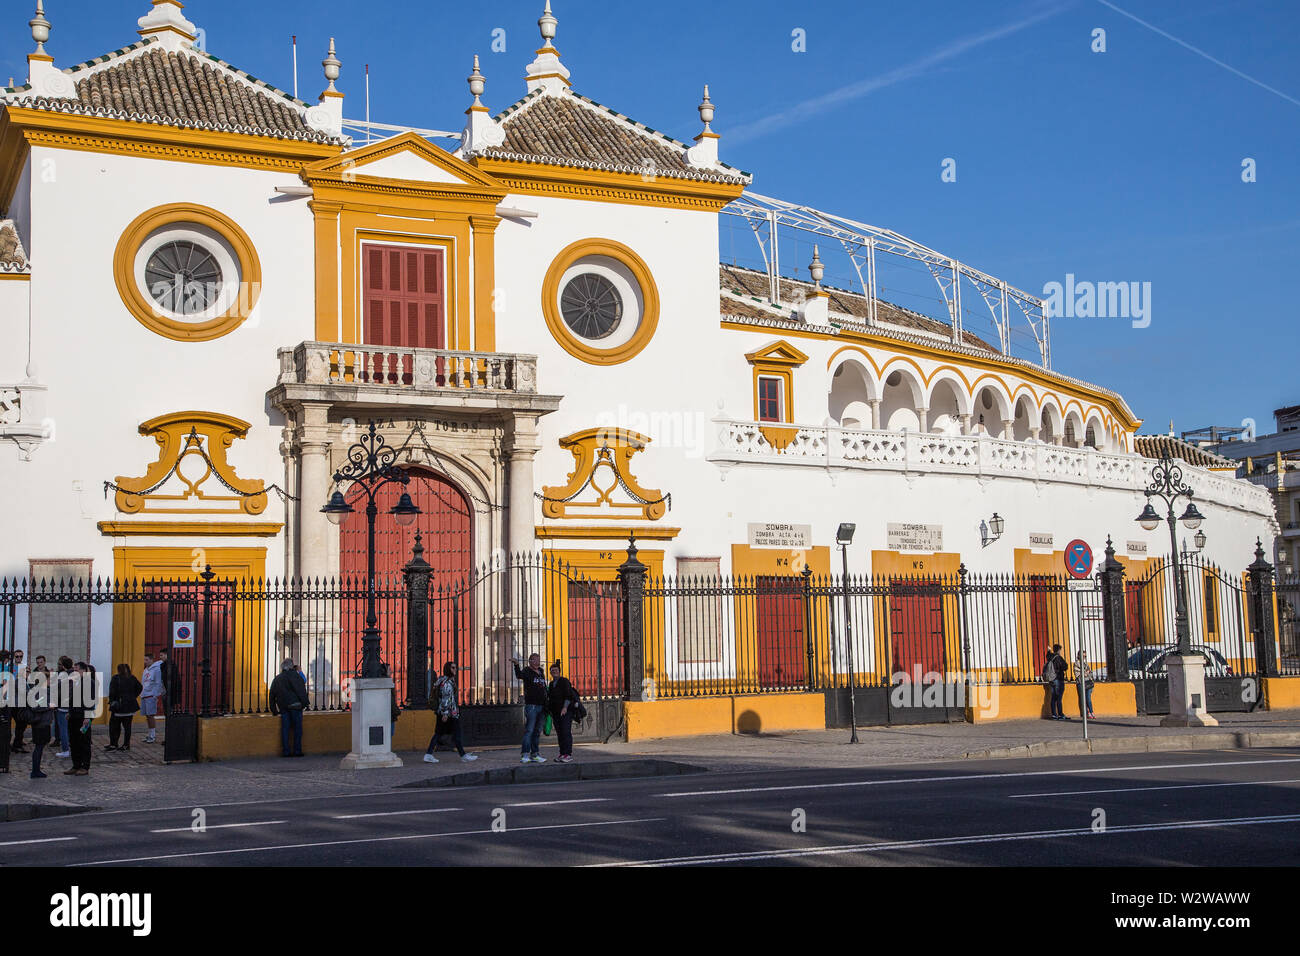 Siviglia, Spagna - 22 Gennaio 2016: la facciata della Plaza de Toros La Maestranza Foto Stock